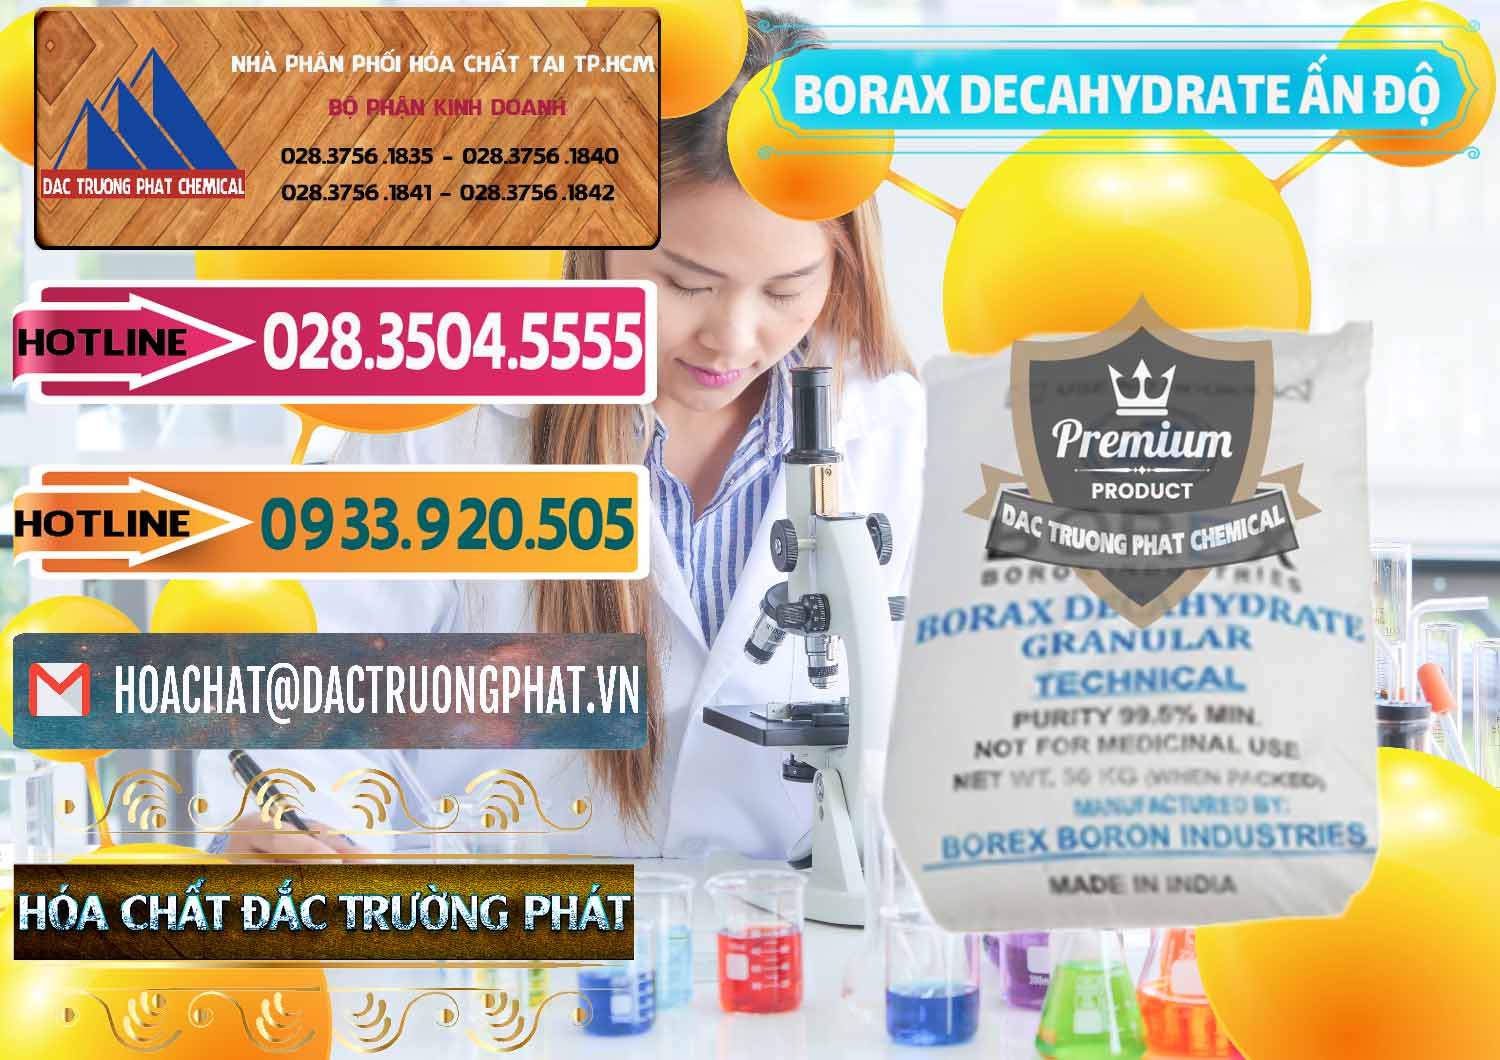 Cty bán & cung ứng Borax Decahydrate Ấn Độ India - 0449 - Nơi chuyên cung cấp & bán hóa chất tại TP.HCM - dactruongphat.vn